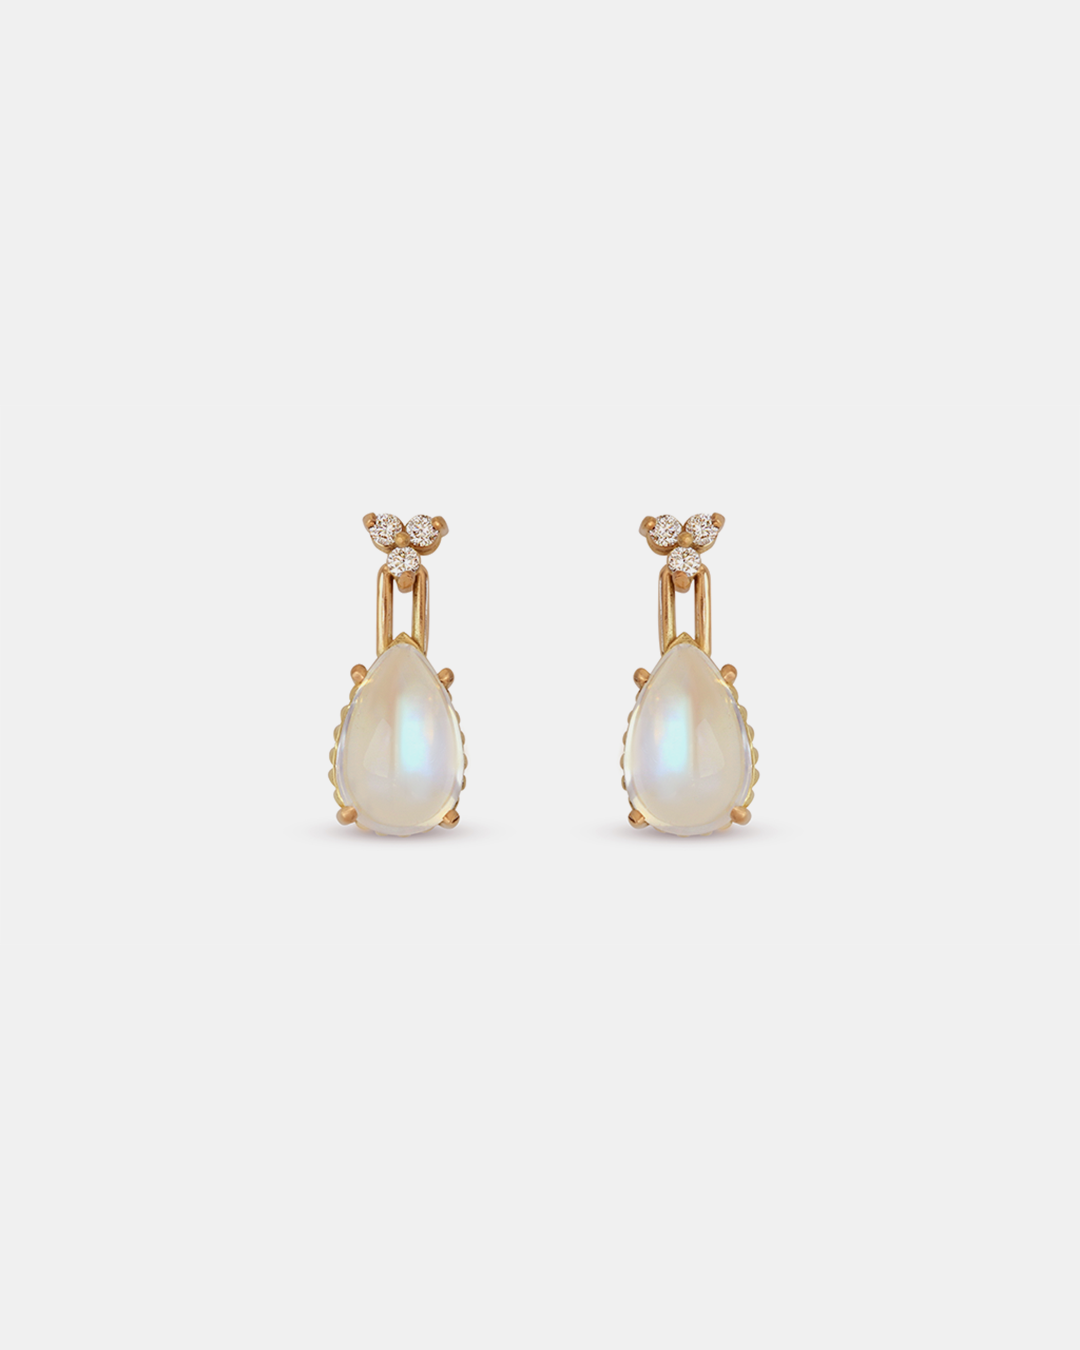 Skull Moonstone + Diamond Drop Earrings By fitzgerald jewelry in earrings Category